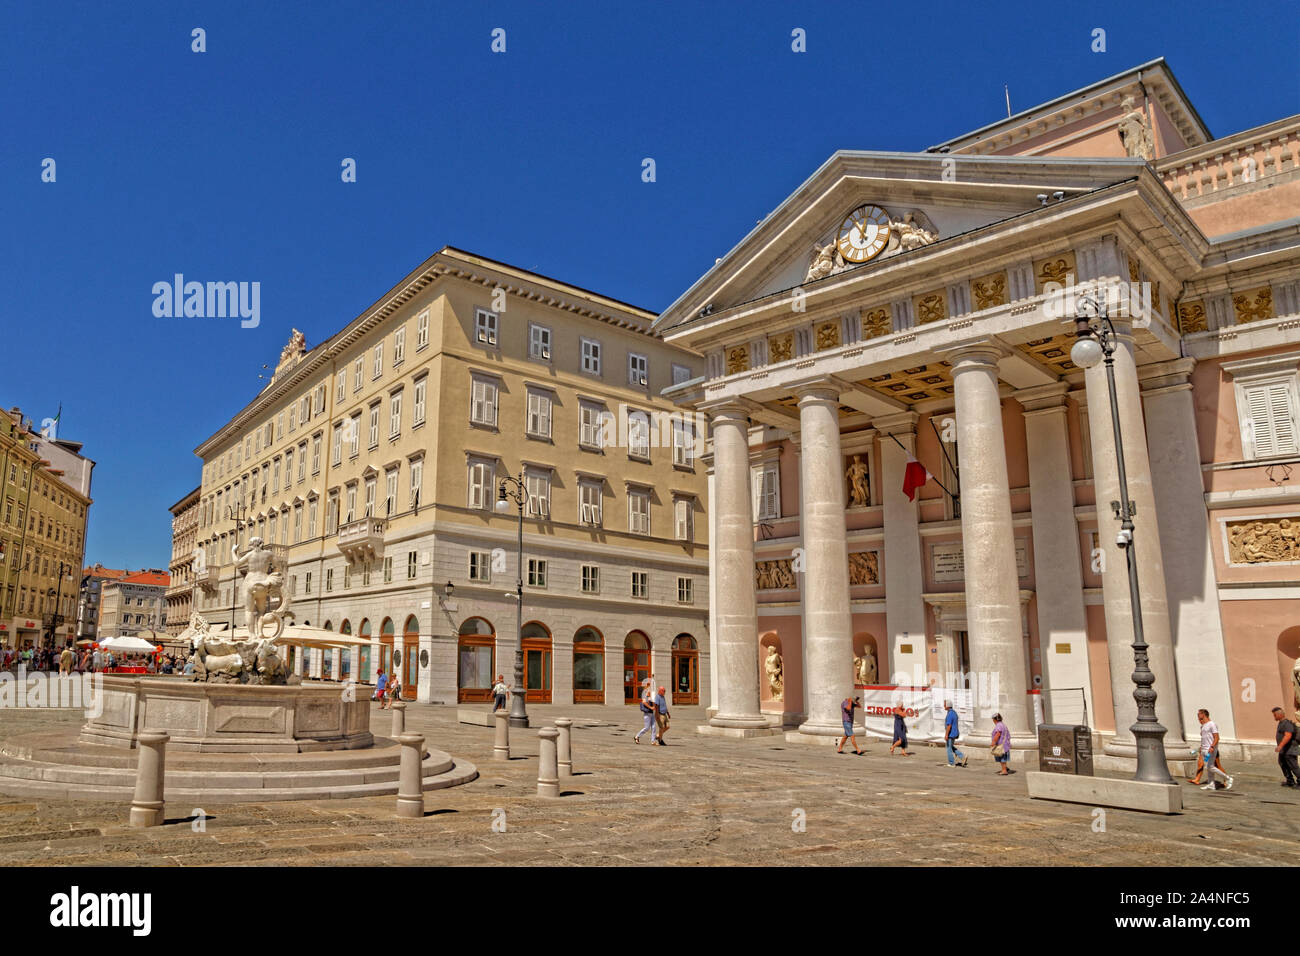 L'ex-temple comme Trieste Bourse(maintenant la Chambre de Commerce de Trieste) dans la Piazza della Borsa, Trieste, Italie. Banque D'Images